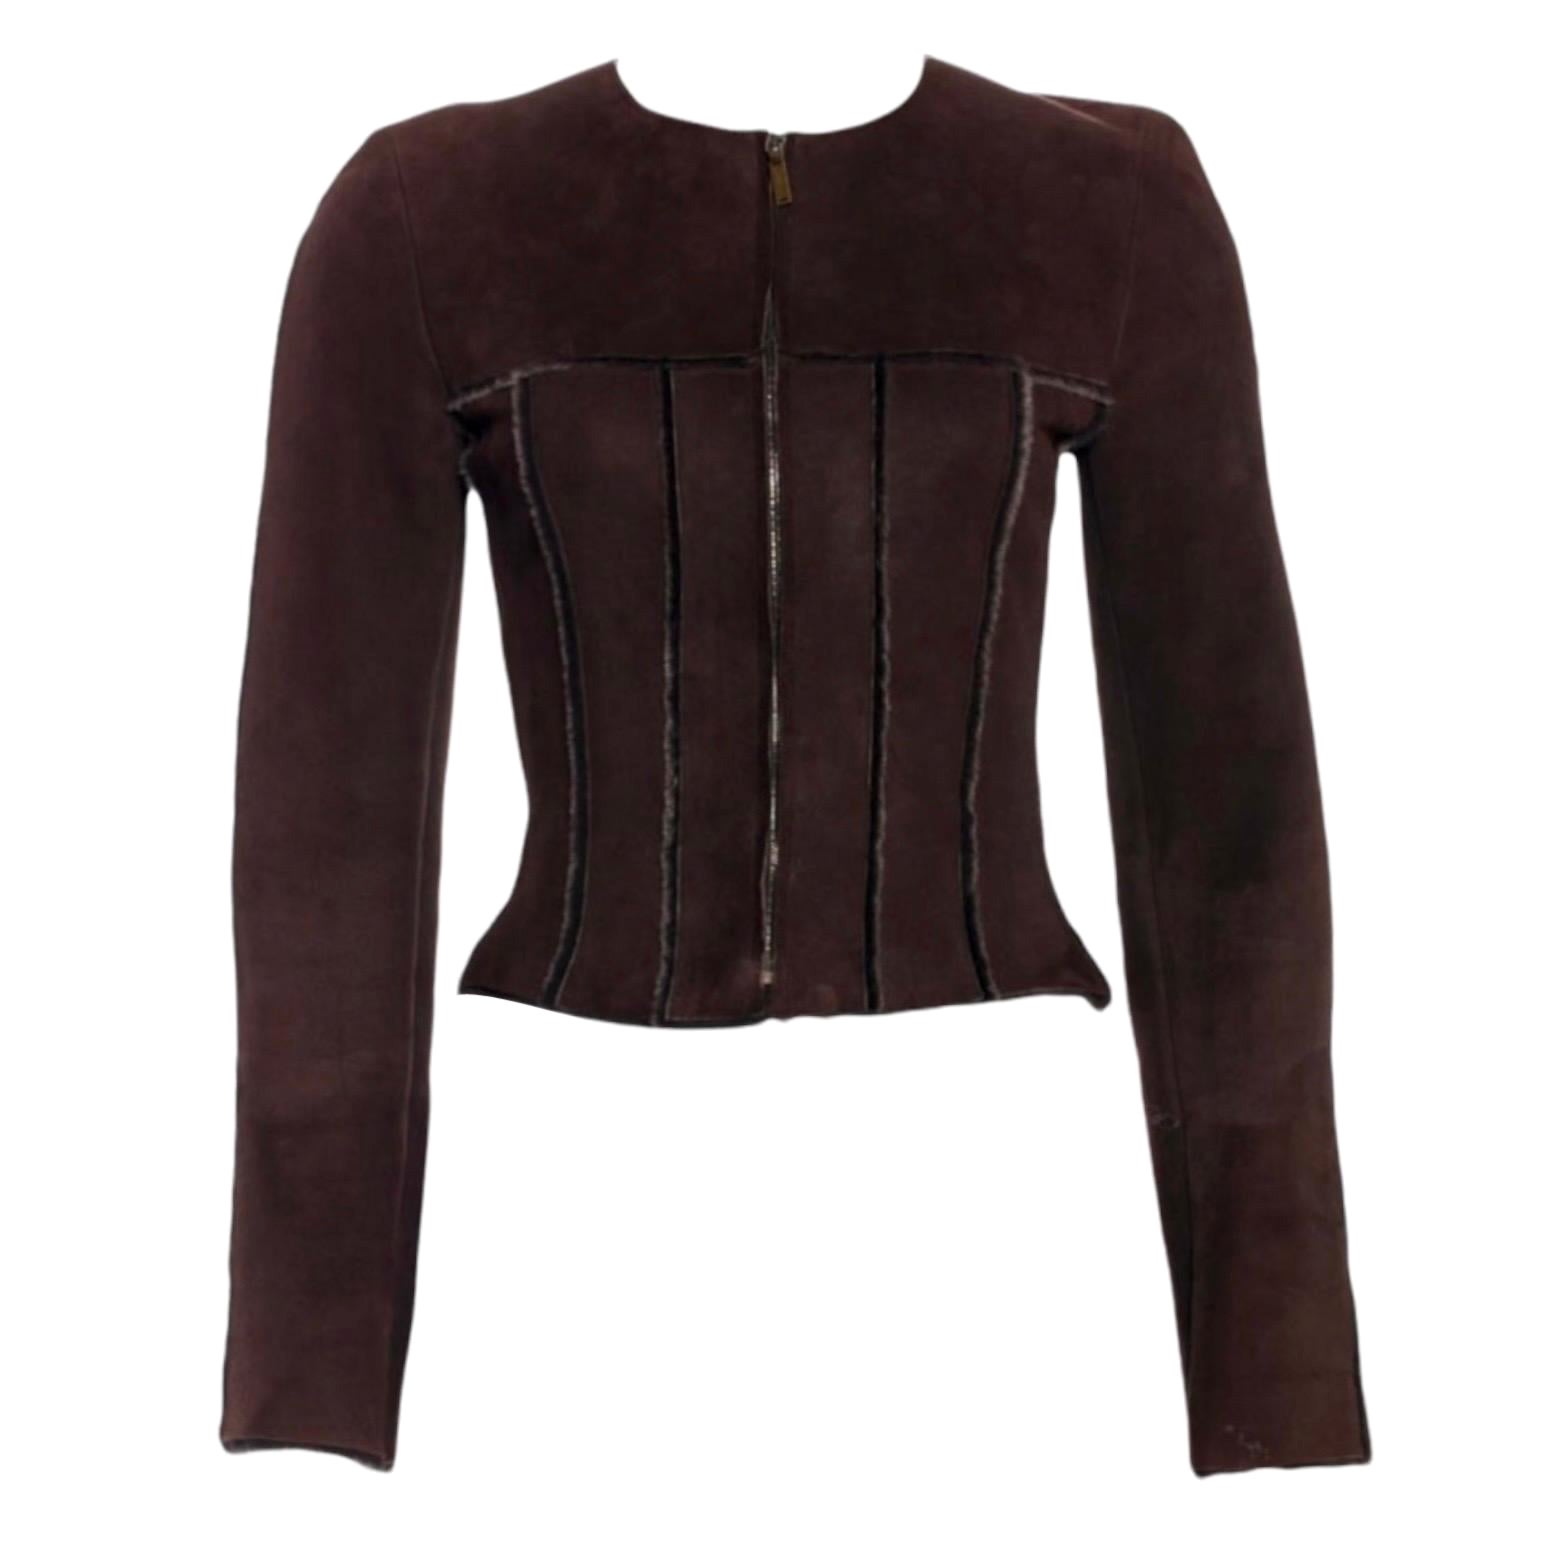 UNWORN Chanel Brown Lambskin Suede Fur Shearling Outwear Jacket 34